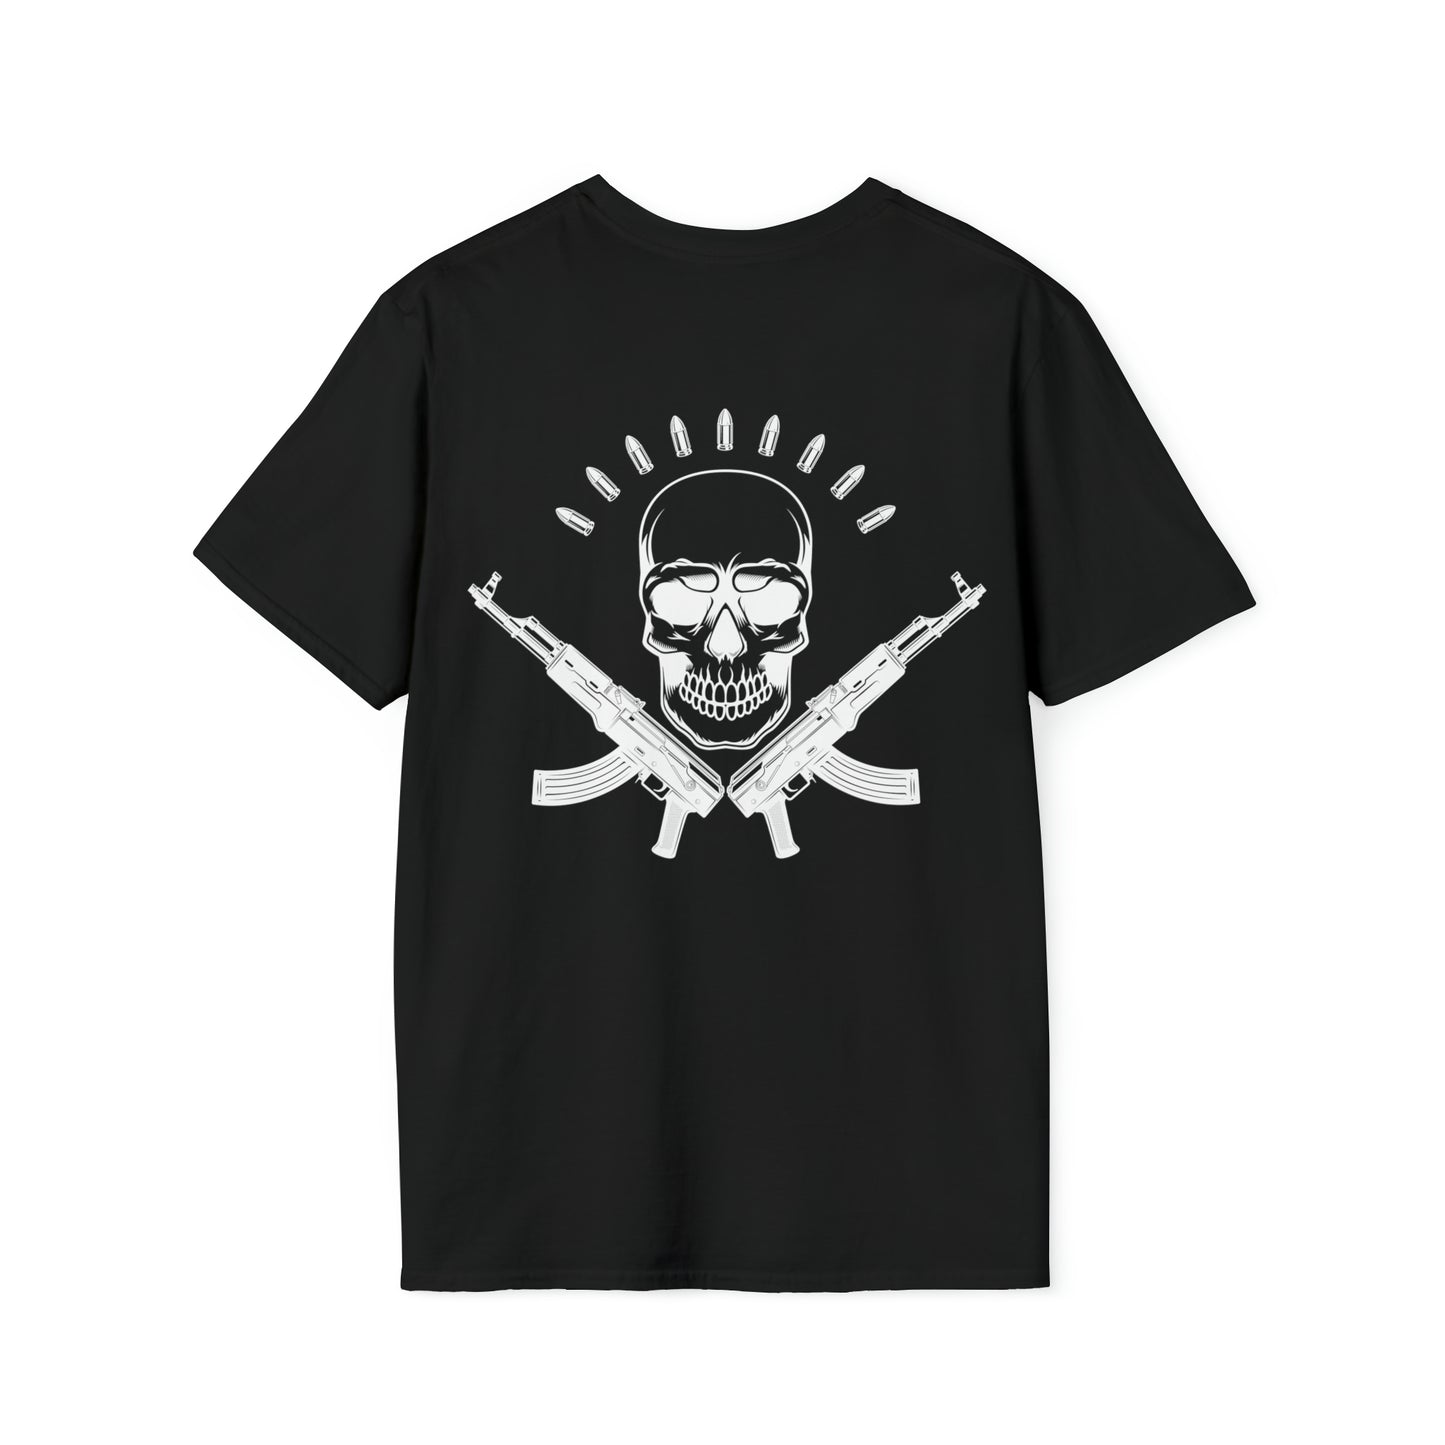 Gunshop Unisex Softstyle T-Shirt